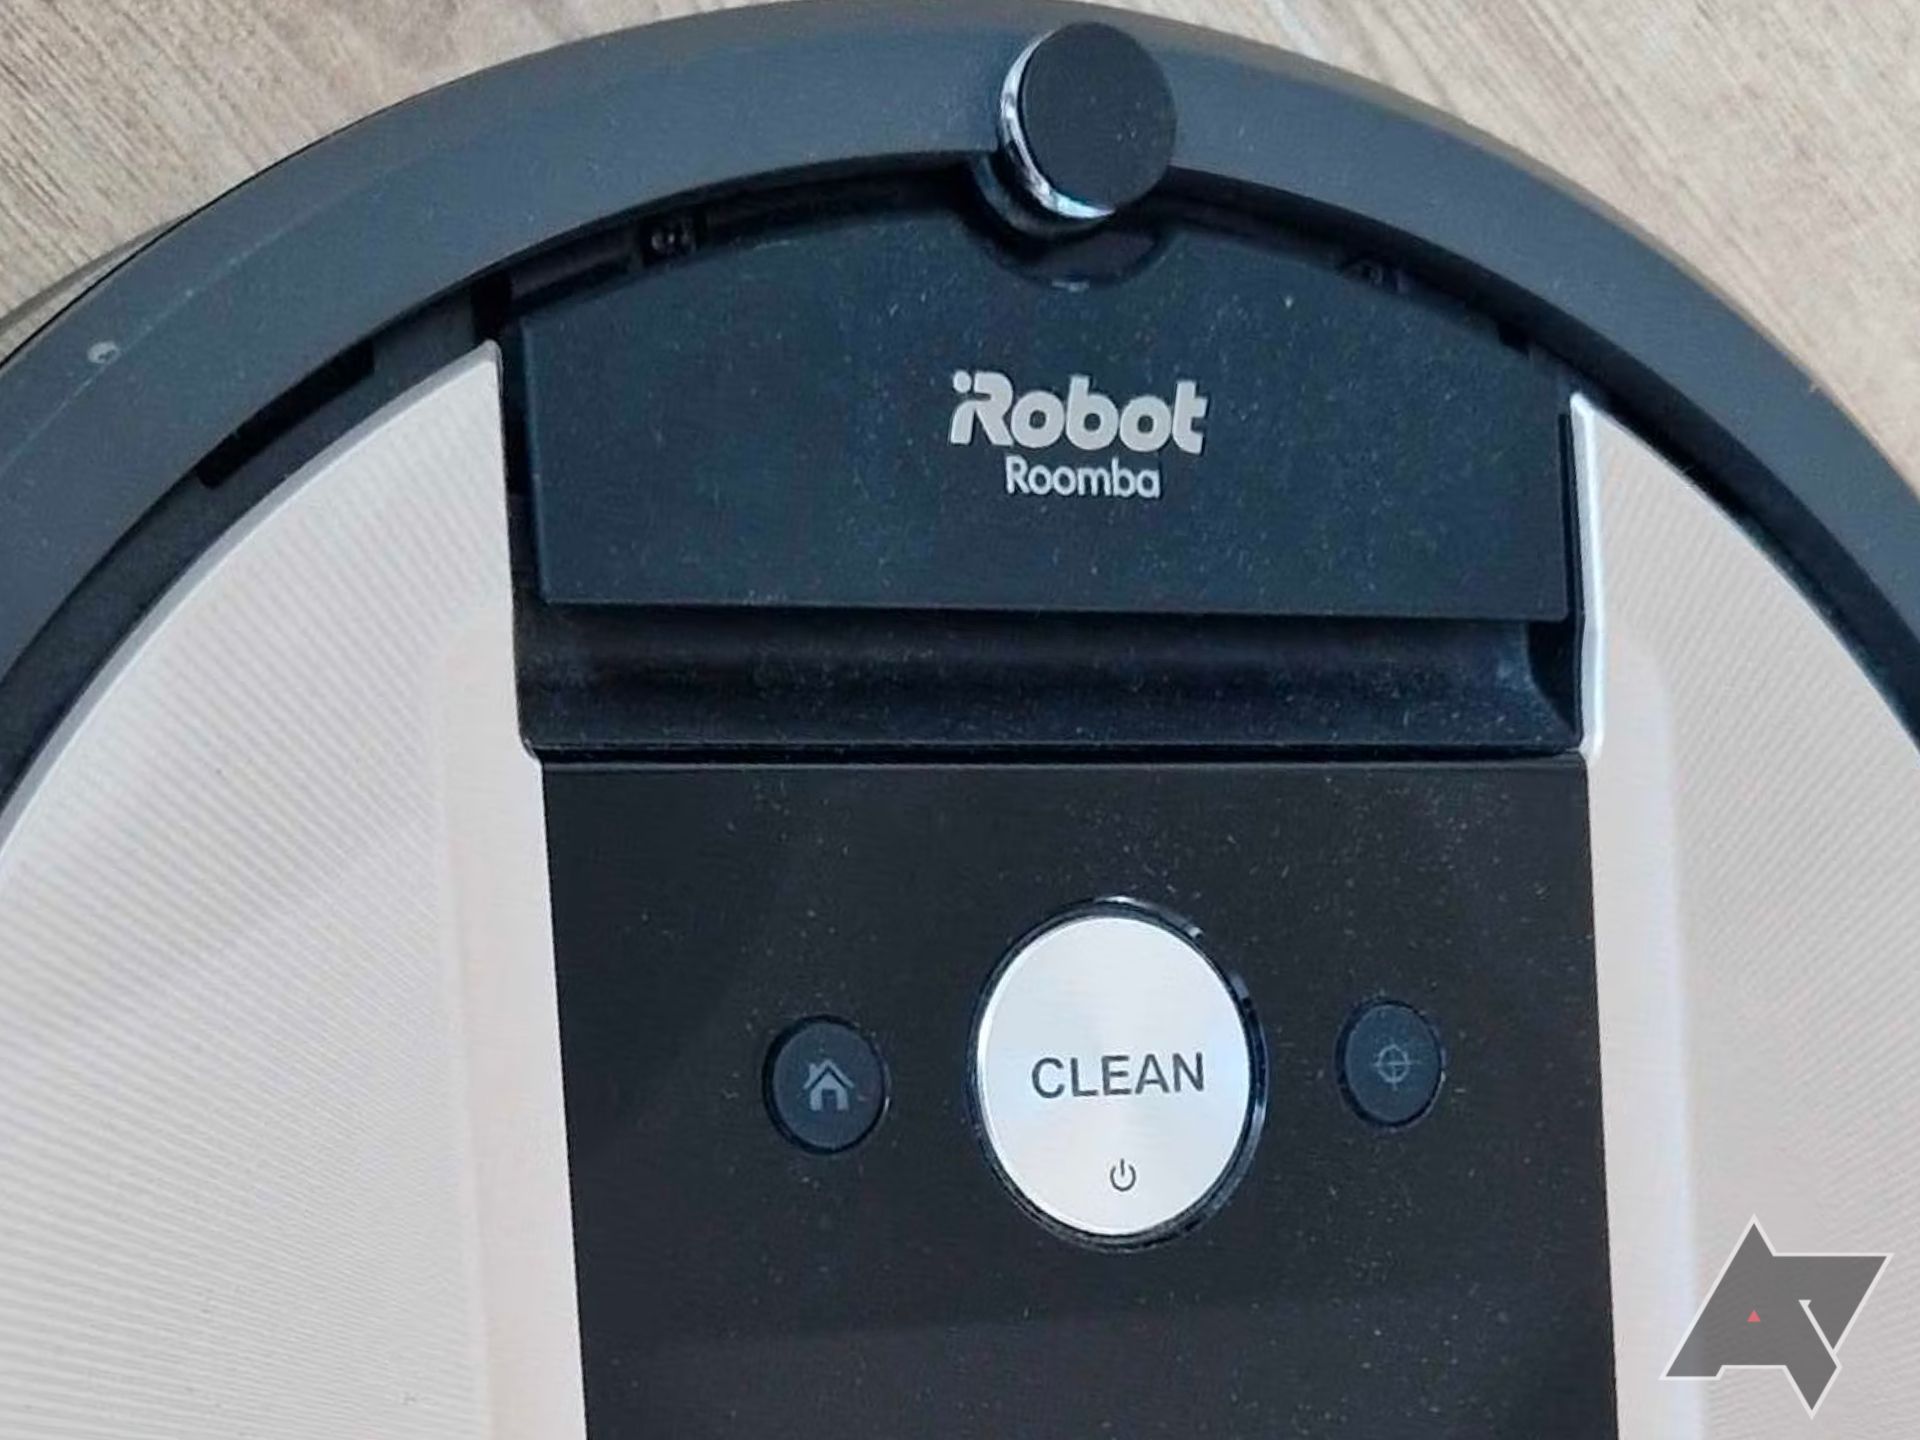 Um close de um aspirador Roomba mostrando seus botões físicos